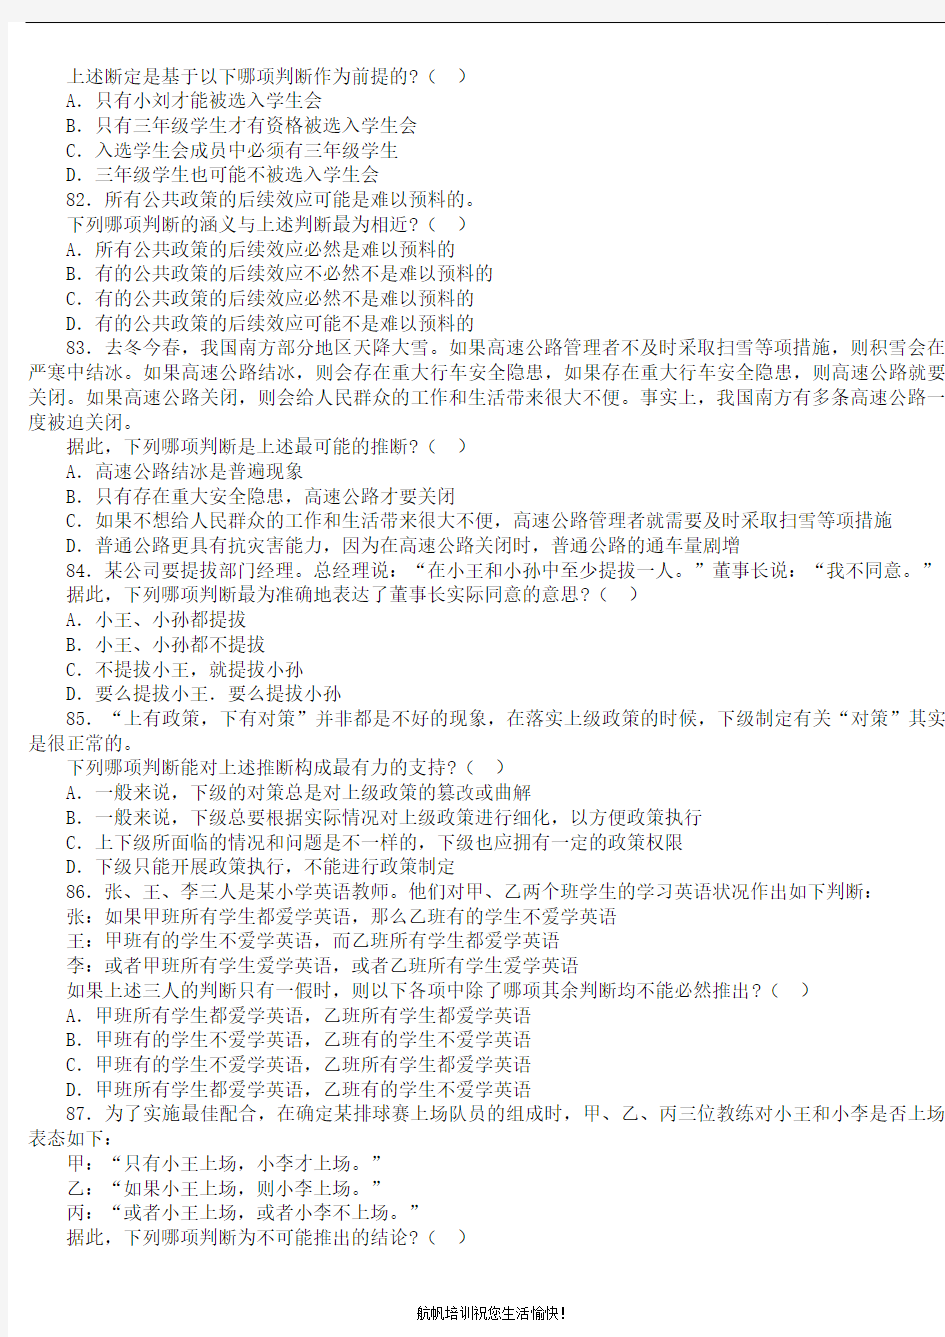 2013年云南省公务员考试行政能力测试练习题6